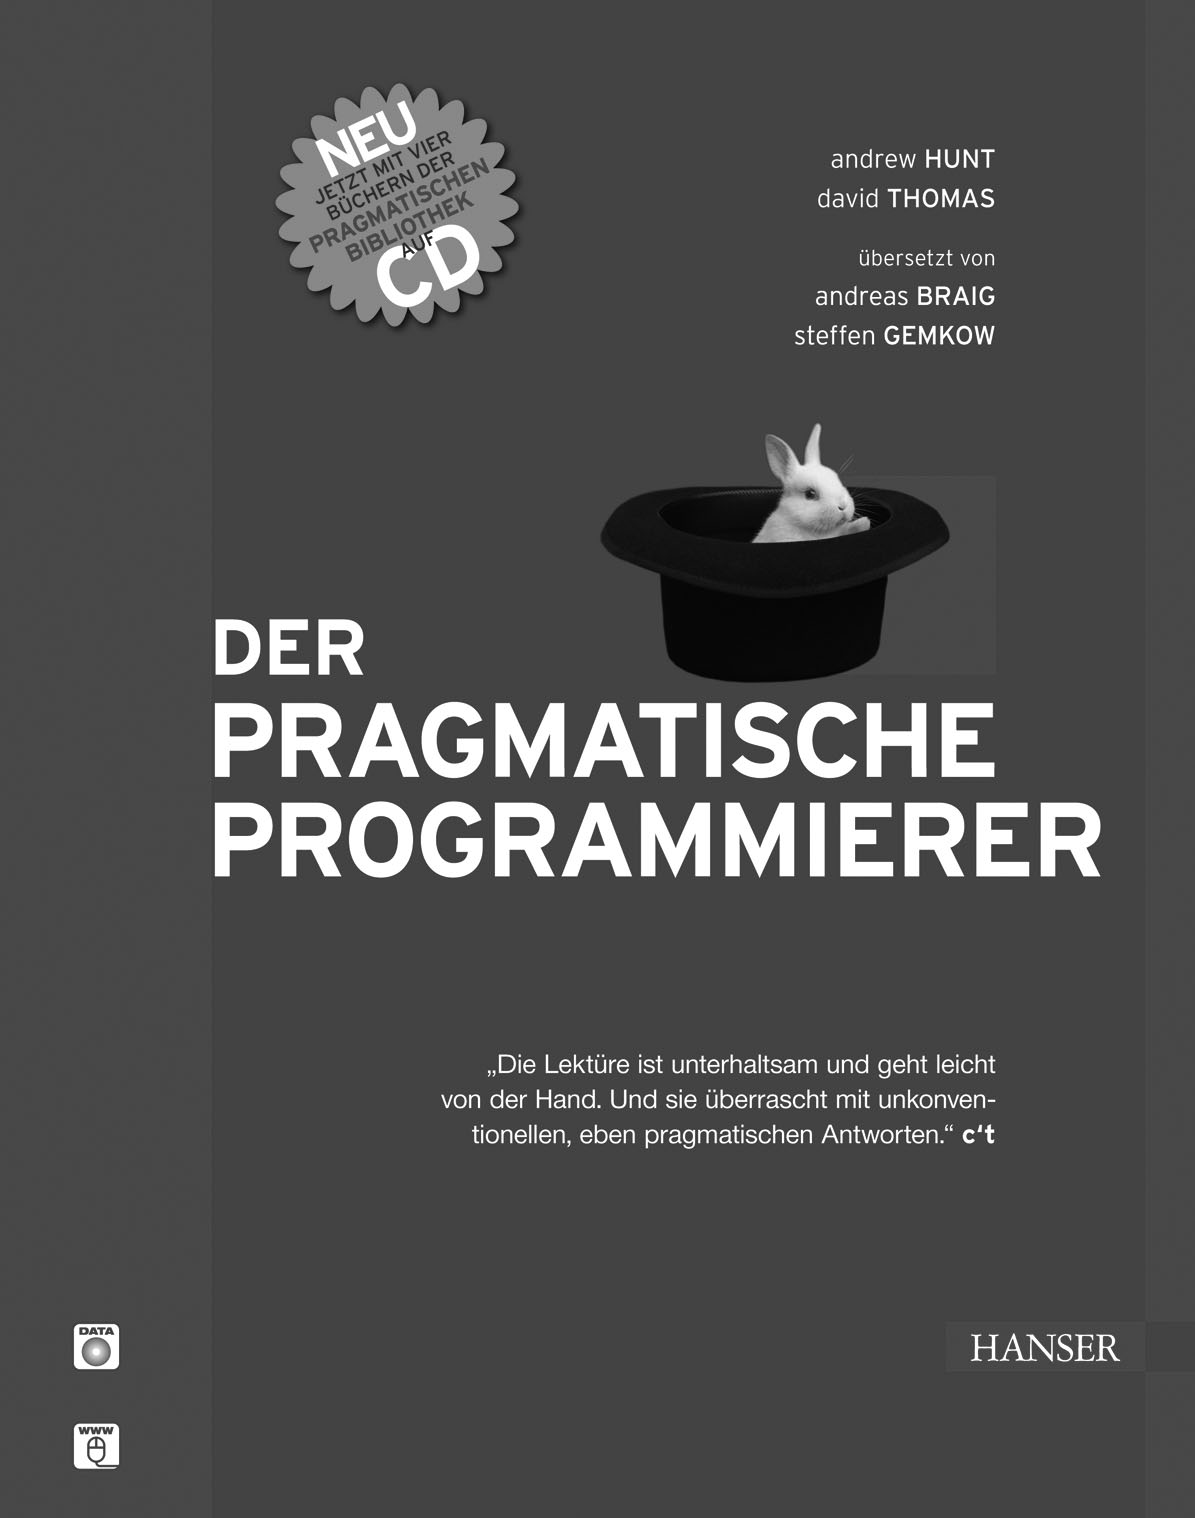 Konzentrieren Sie sich auf das Wesentliche! Hunt/Thomas Der Pragmatische Programmierer 331 Seiten.